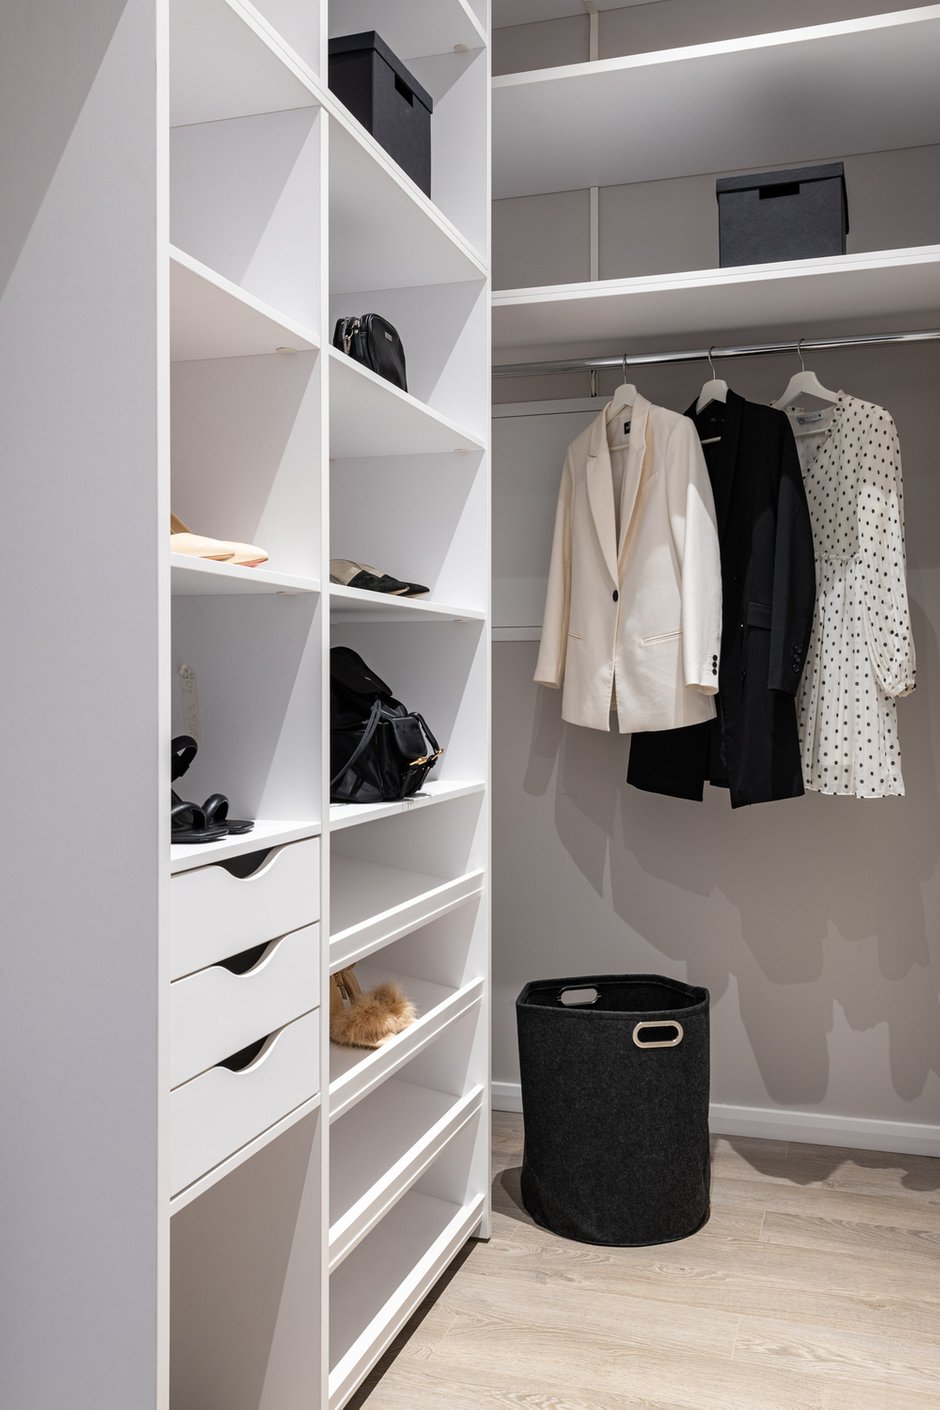 Еще одно место для хранения в квартире — это отдельная гардеробная при входе. Функцию хранения вещей выполняет открытый угловой шкаф. В нем предусмотрены штанга для верхних вещей, которые, например, не нужны в текущем сезоне, обувница, множество полок и несколько выдвижных ящиков.